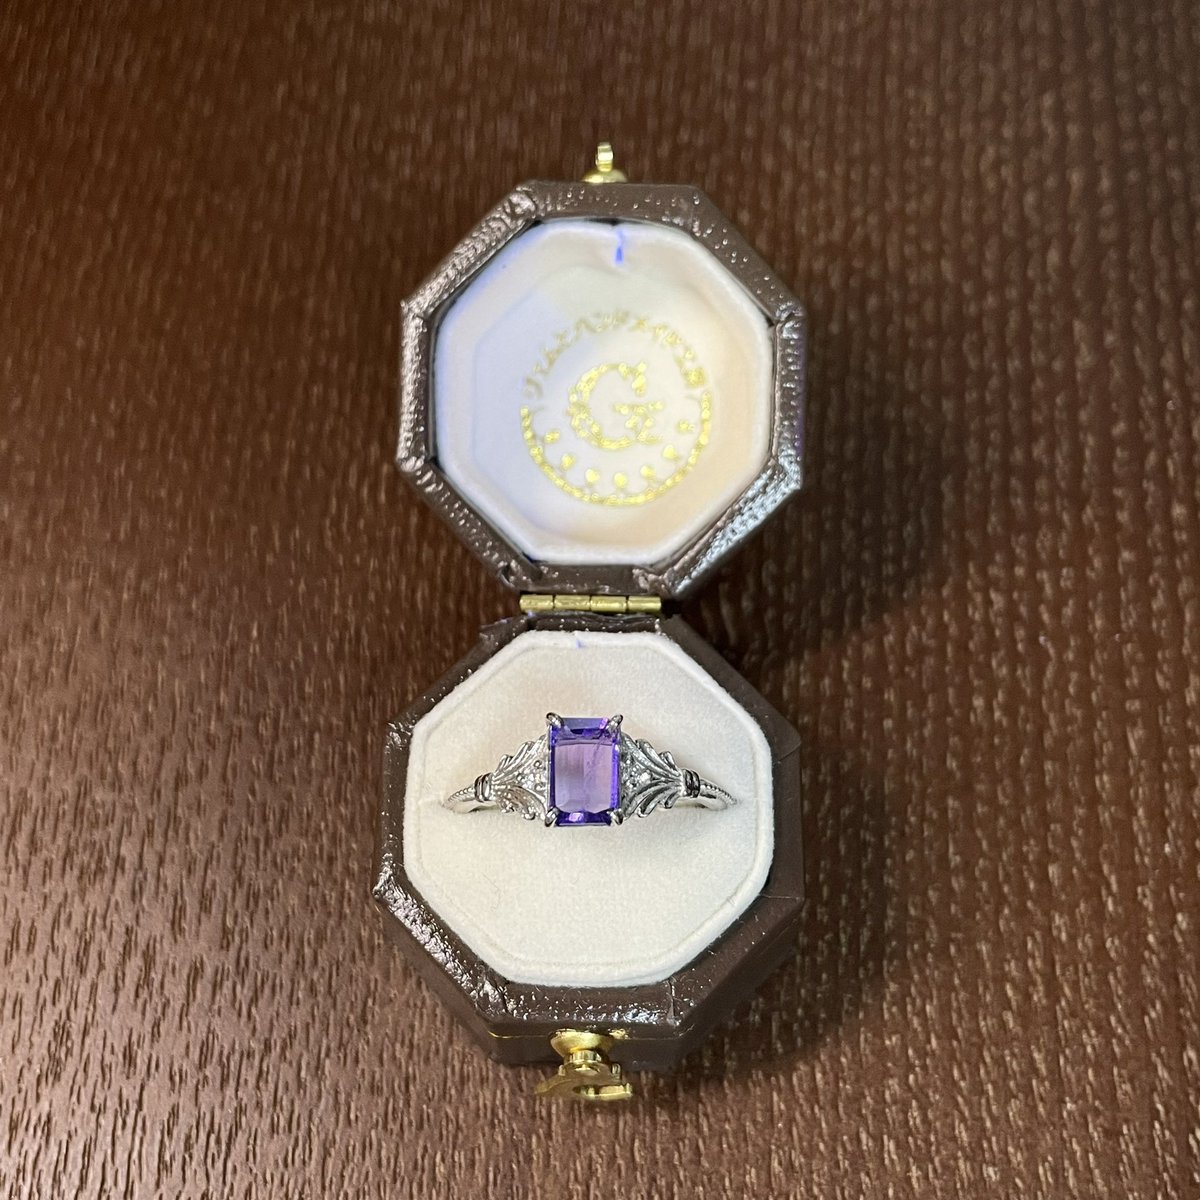 詩乃 on Twitter: "ジェムとハンドメイド工房さん(@gem_handmade)でハックマナイトのリングを購入しました。細工の繊細さ